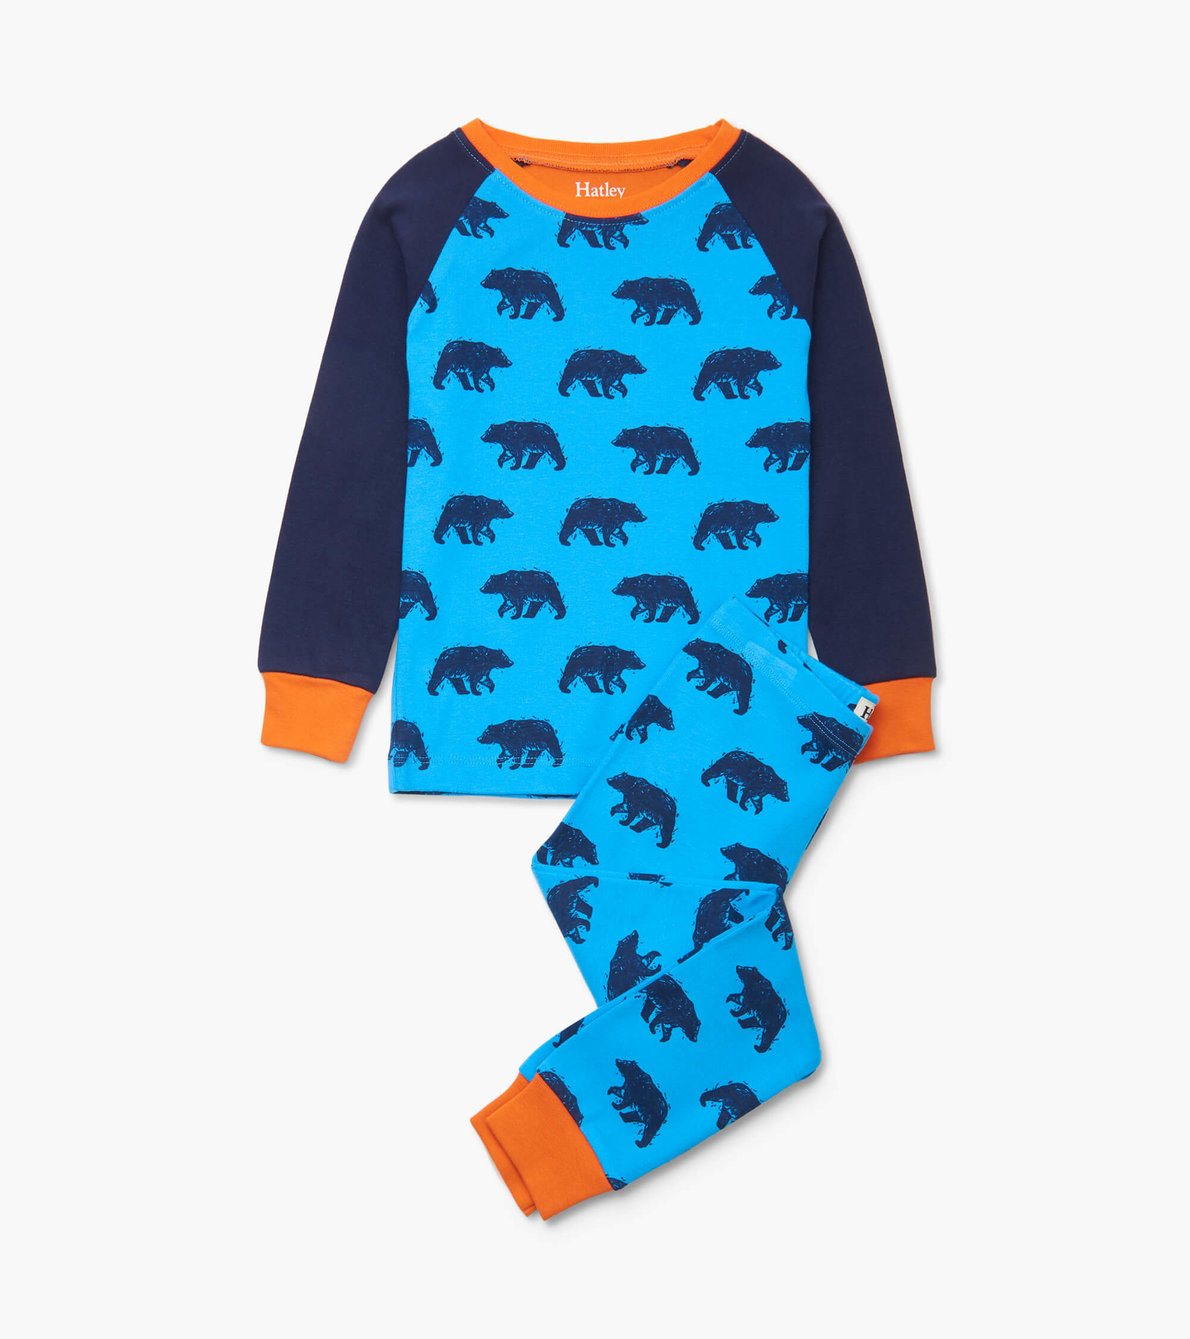 View larger image of Blue Bears Organic Cotton Raglan Pajama Set